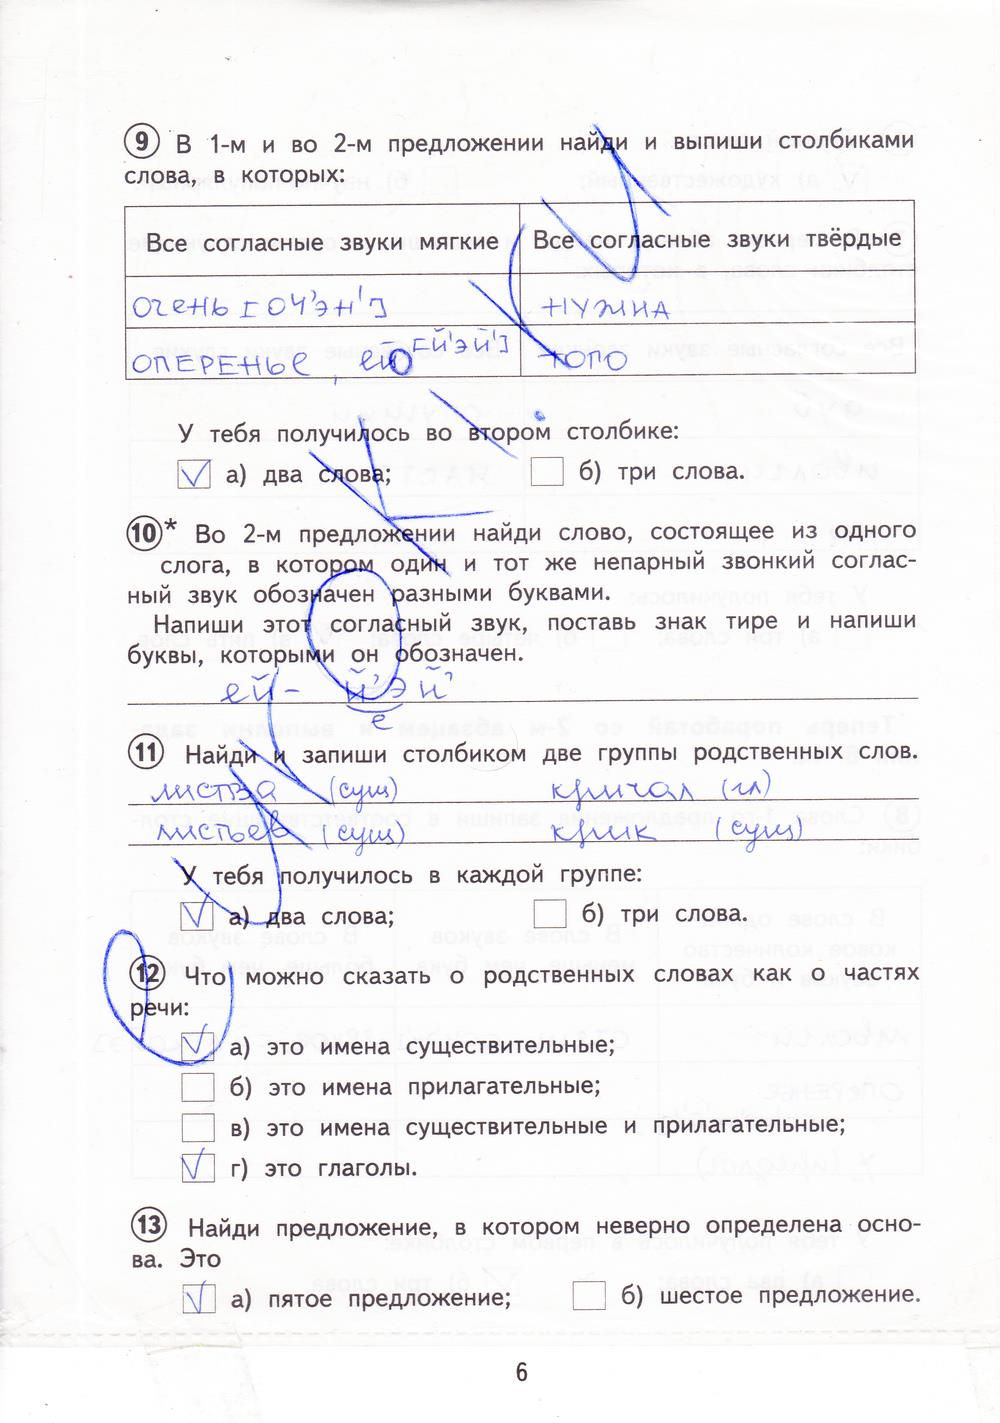 гдз 3 класс тетрадь для проверочных работ страница 6 русский язык Лаврова